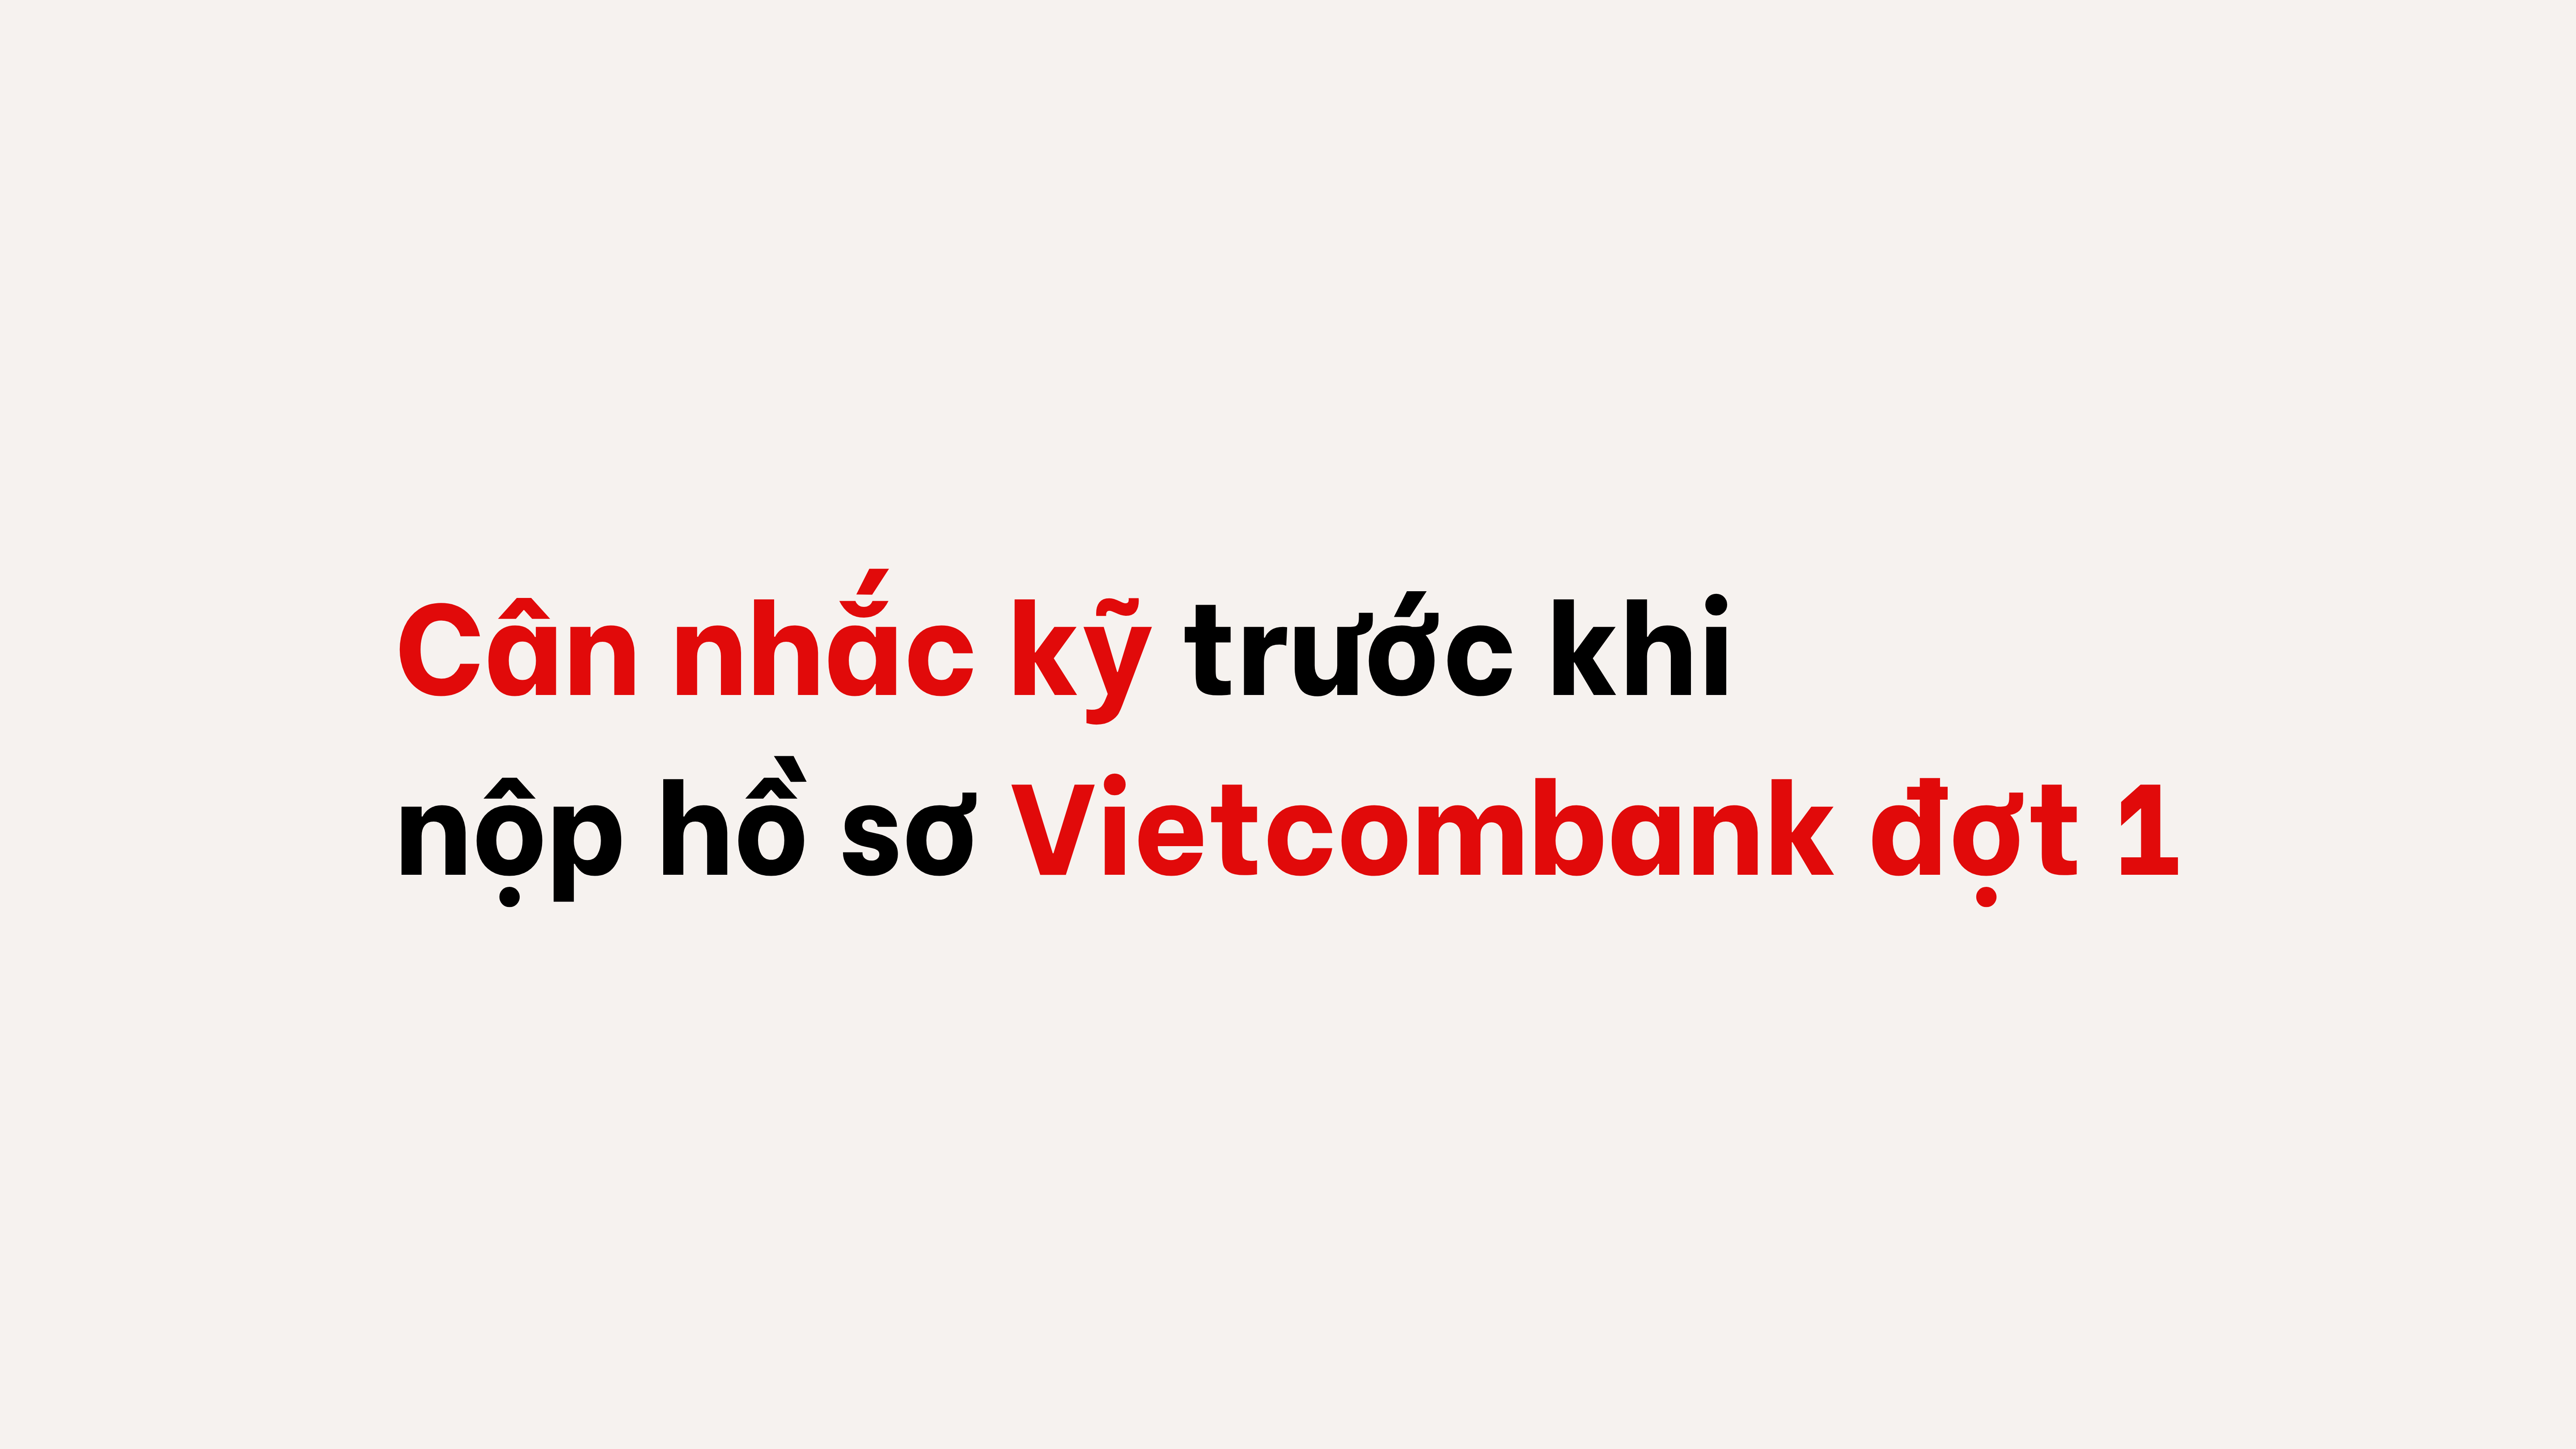 Cân nhắc kỹ trước khi nộp hồ sơ Vietcombank đợt 1.png